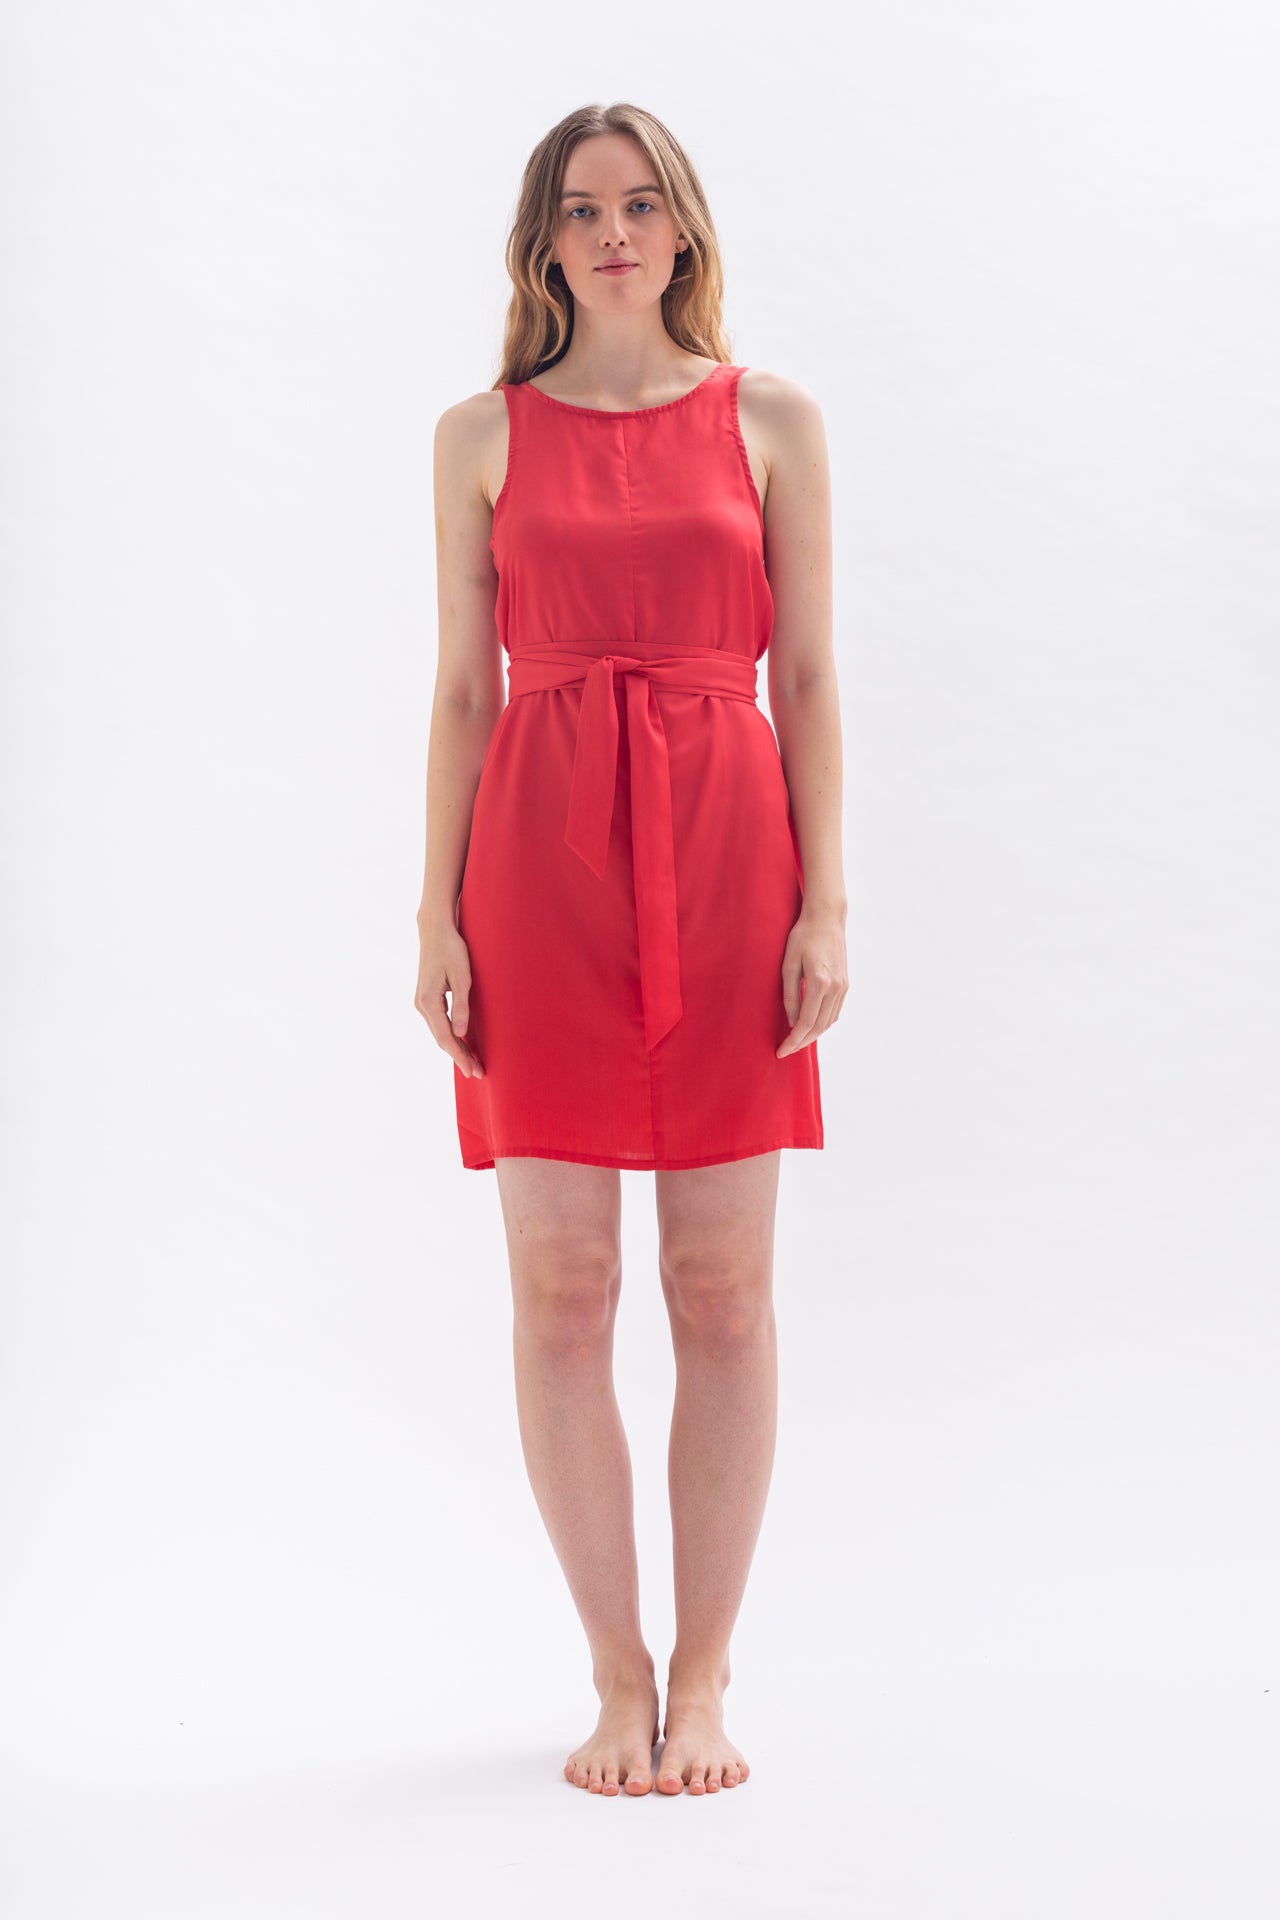 Knielanges "TULPINAA" Kleid in Rot aus Tencel